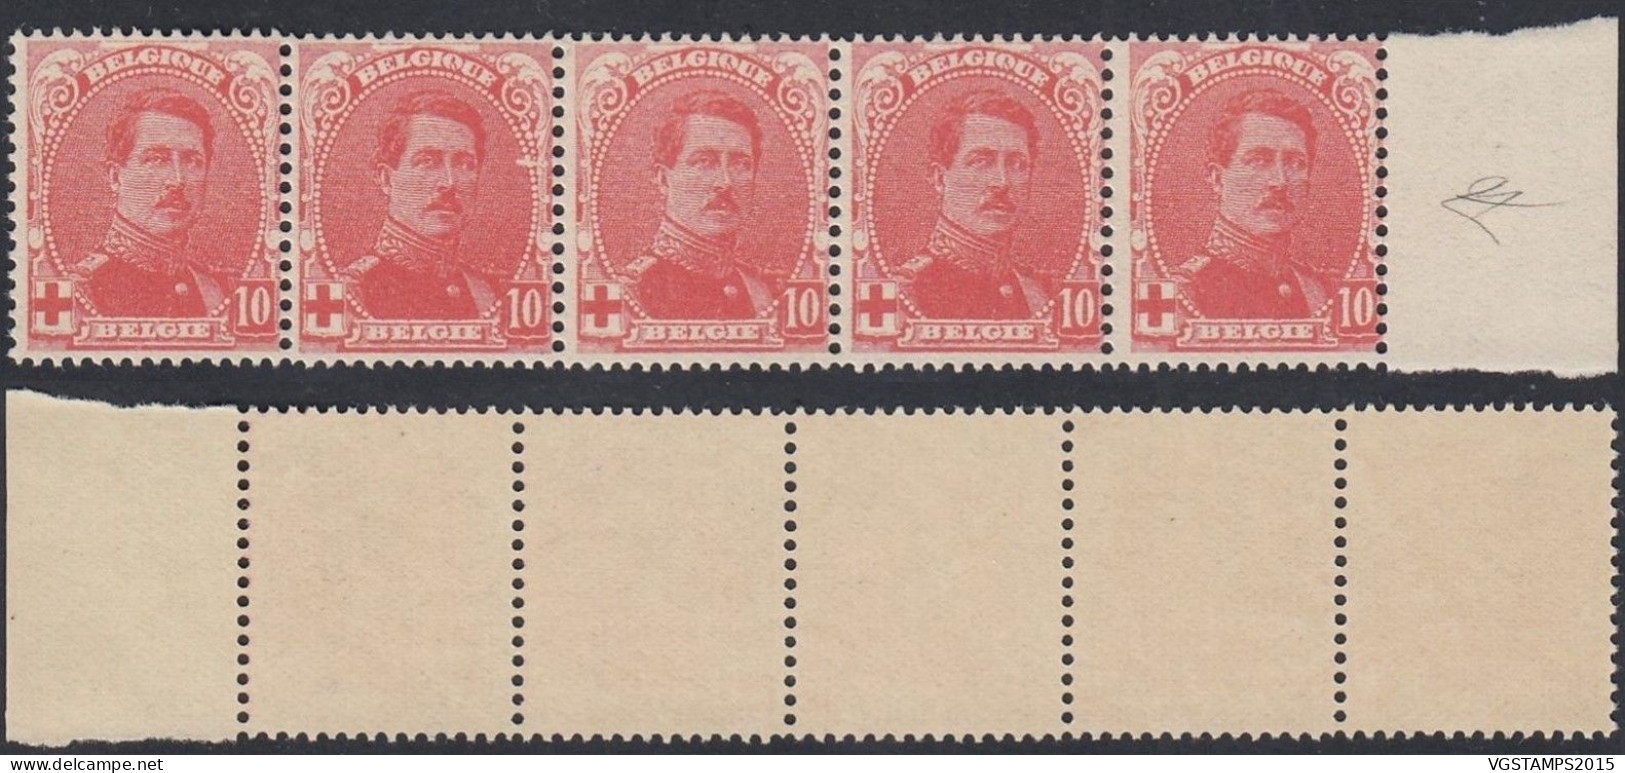 Belgique 1914 - Timbres Neufs. Nr.: 130 V. Bande De 5 Timbres................ (EB) AR-02046 - 1914-1915 Cruz Roja